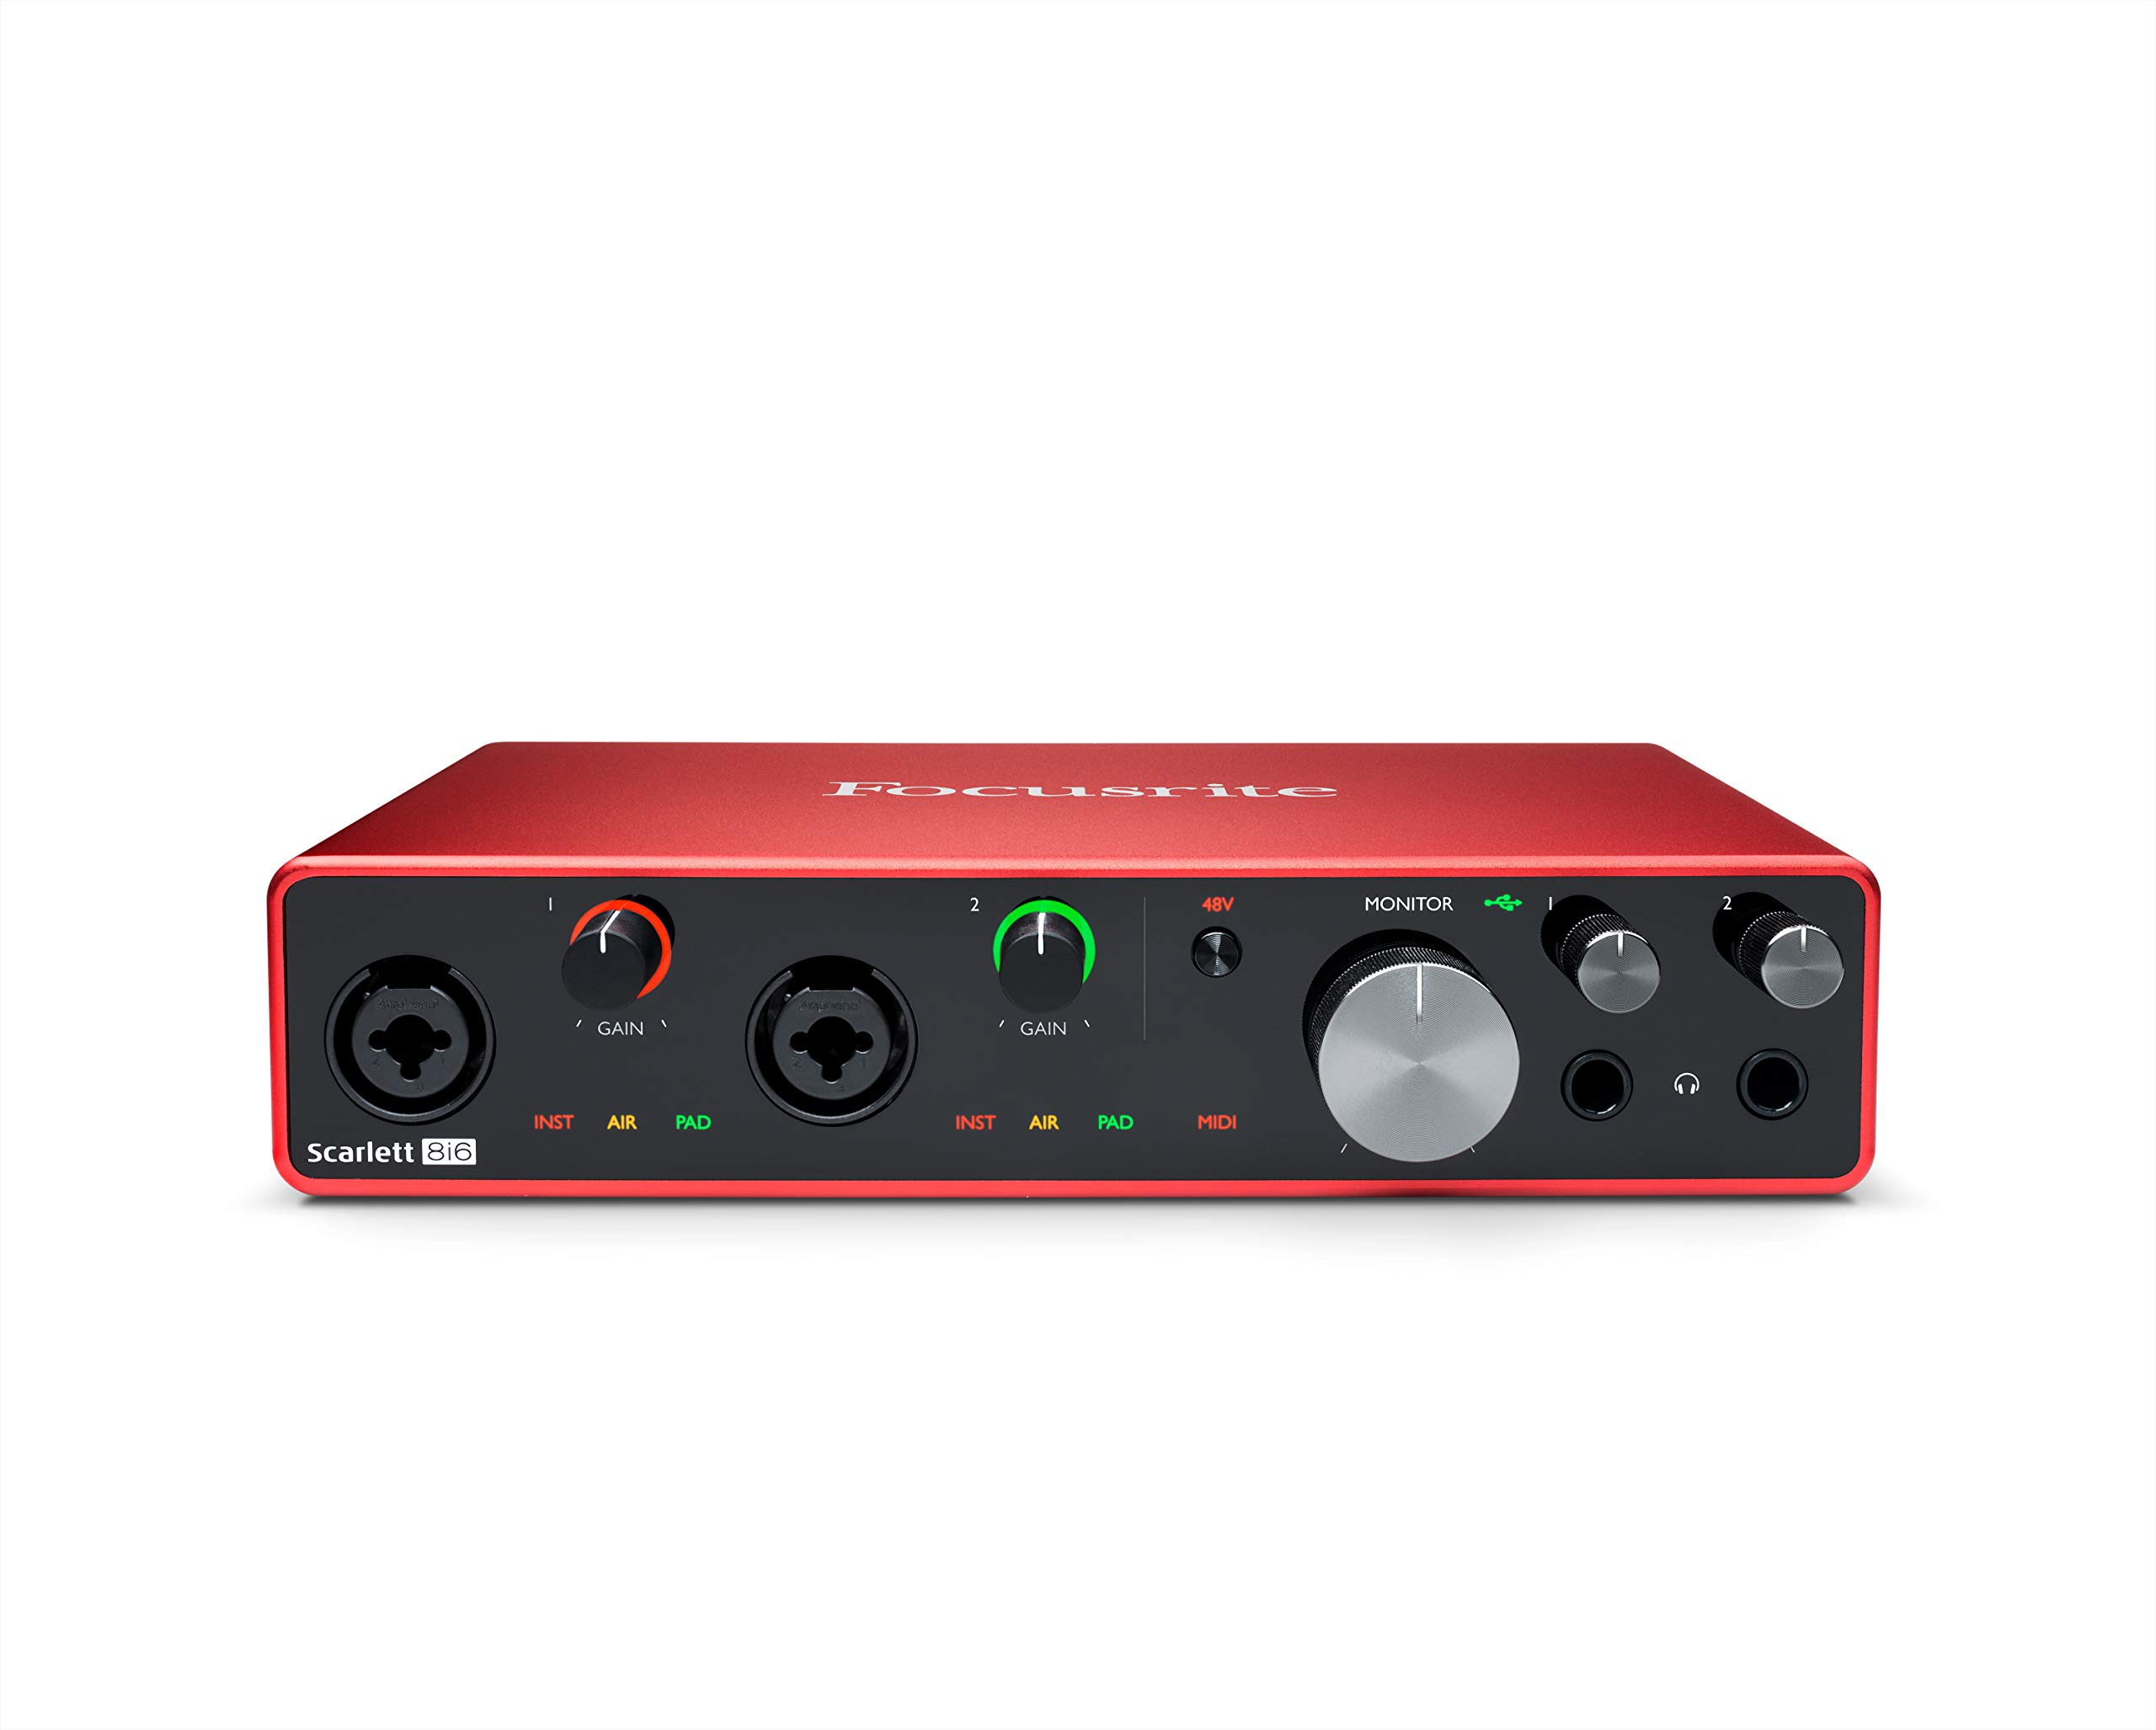 Focusrite Scarlett 8i6 3. Gen USB-Audio-Interface für Aufnahmen, Kompositionen und Streaming – High-Fidelity, Aufnahmen in Studioqualität mit transparenter Wiedergabe